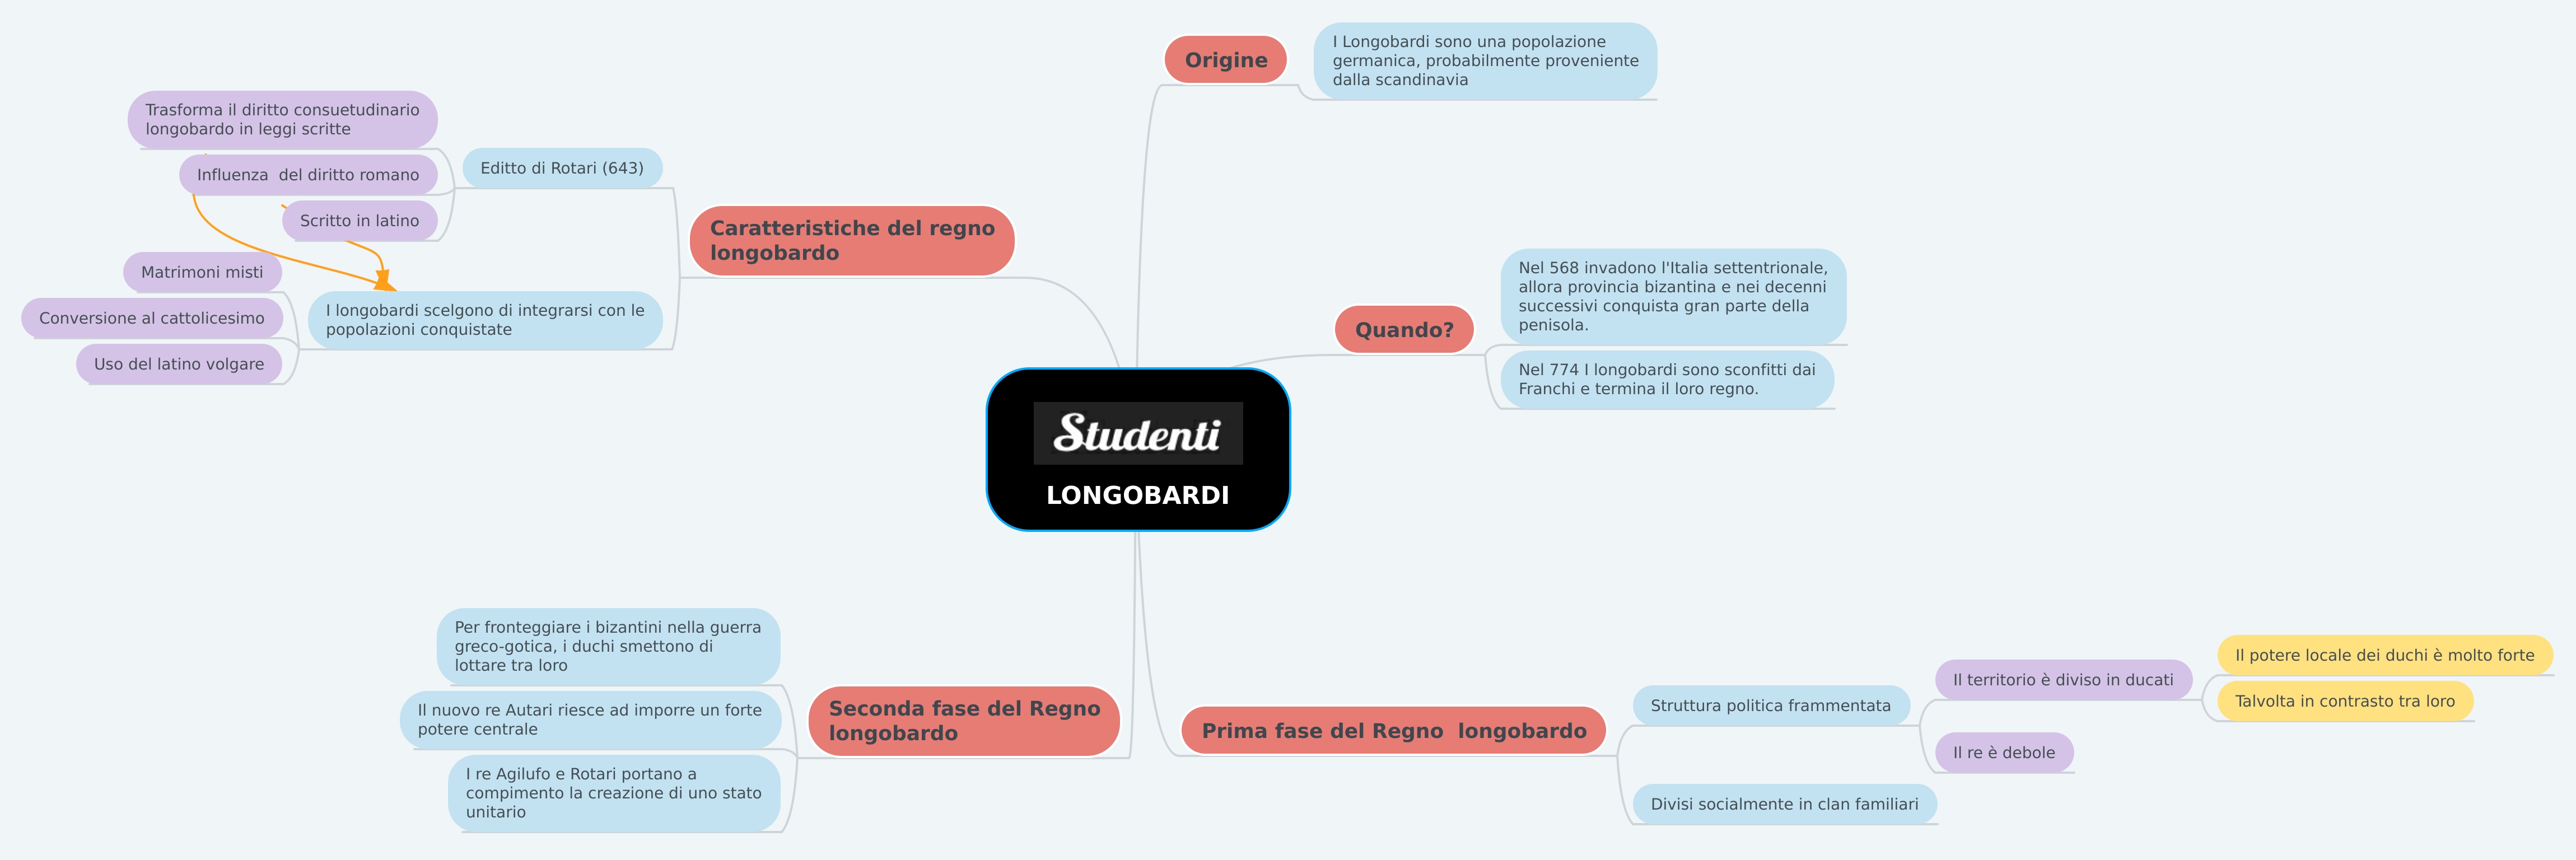 Longobardi Mappa Concettuale Studenti It